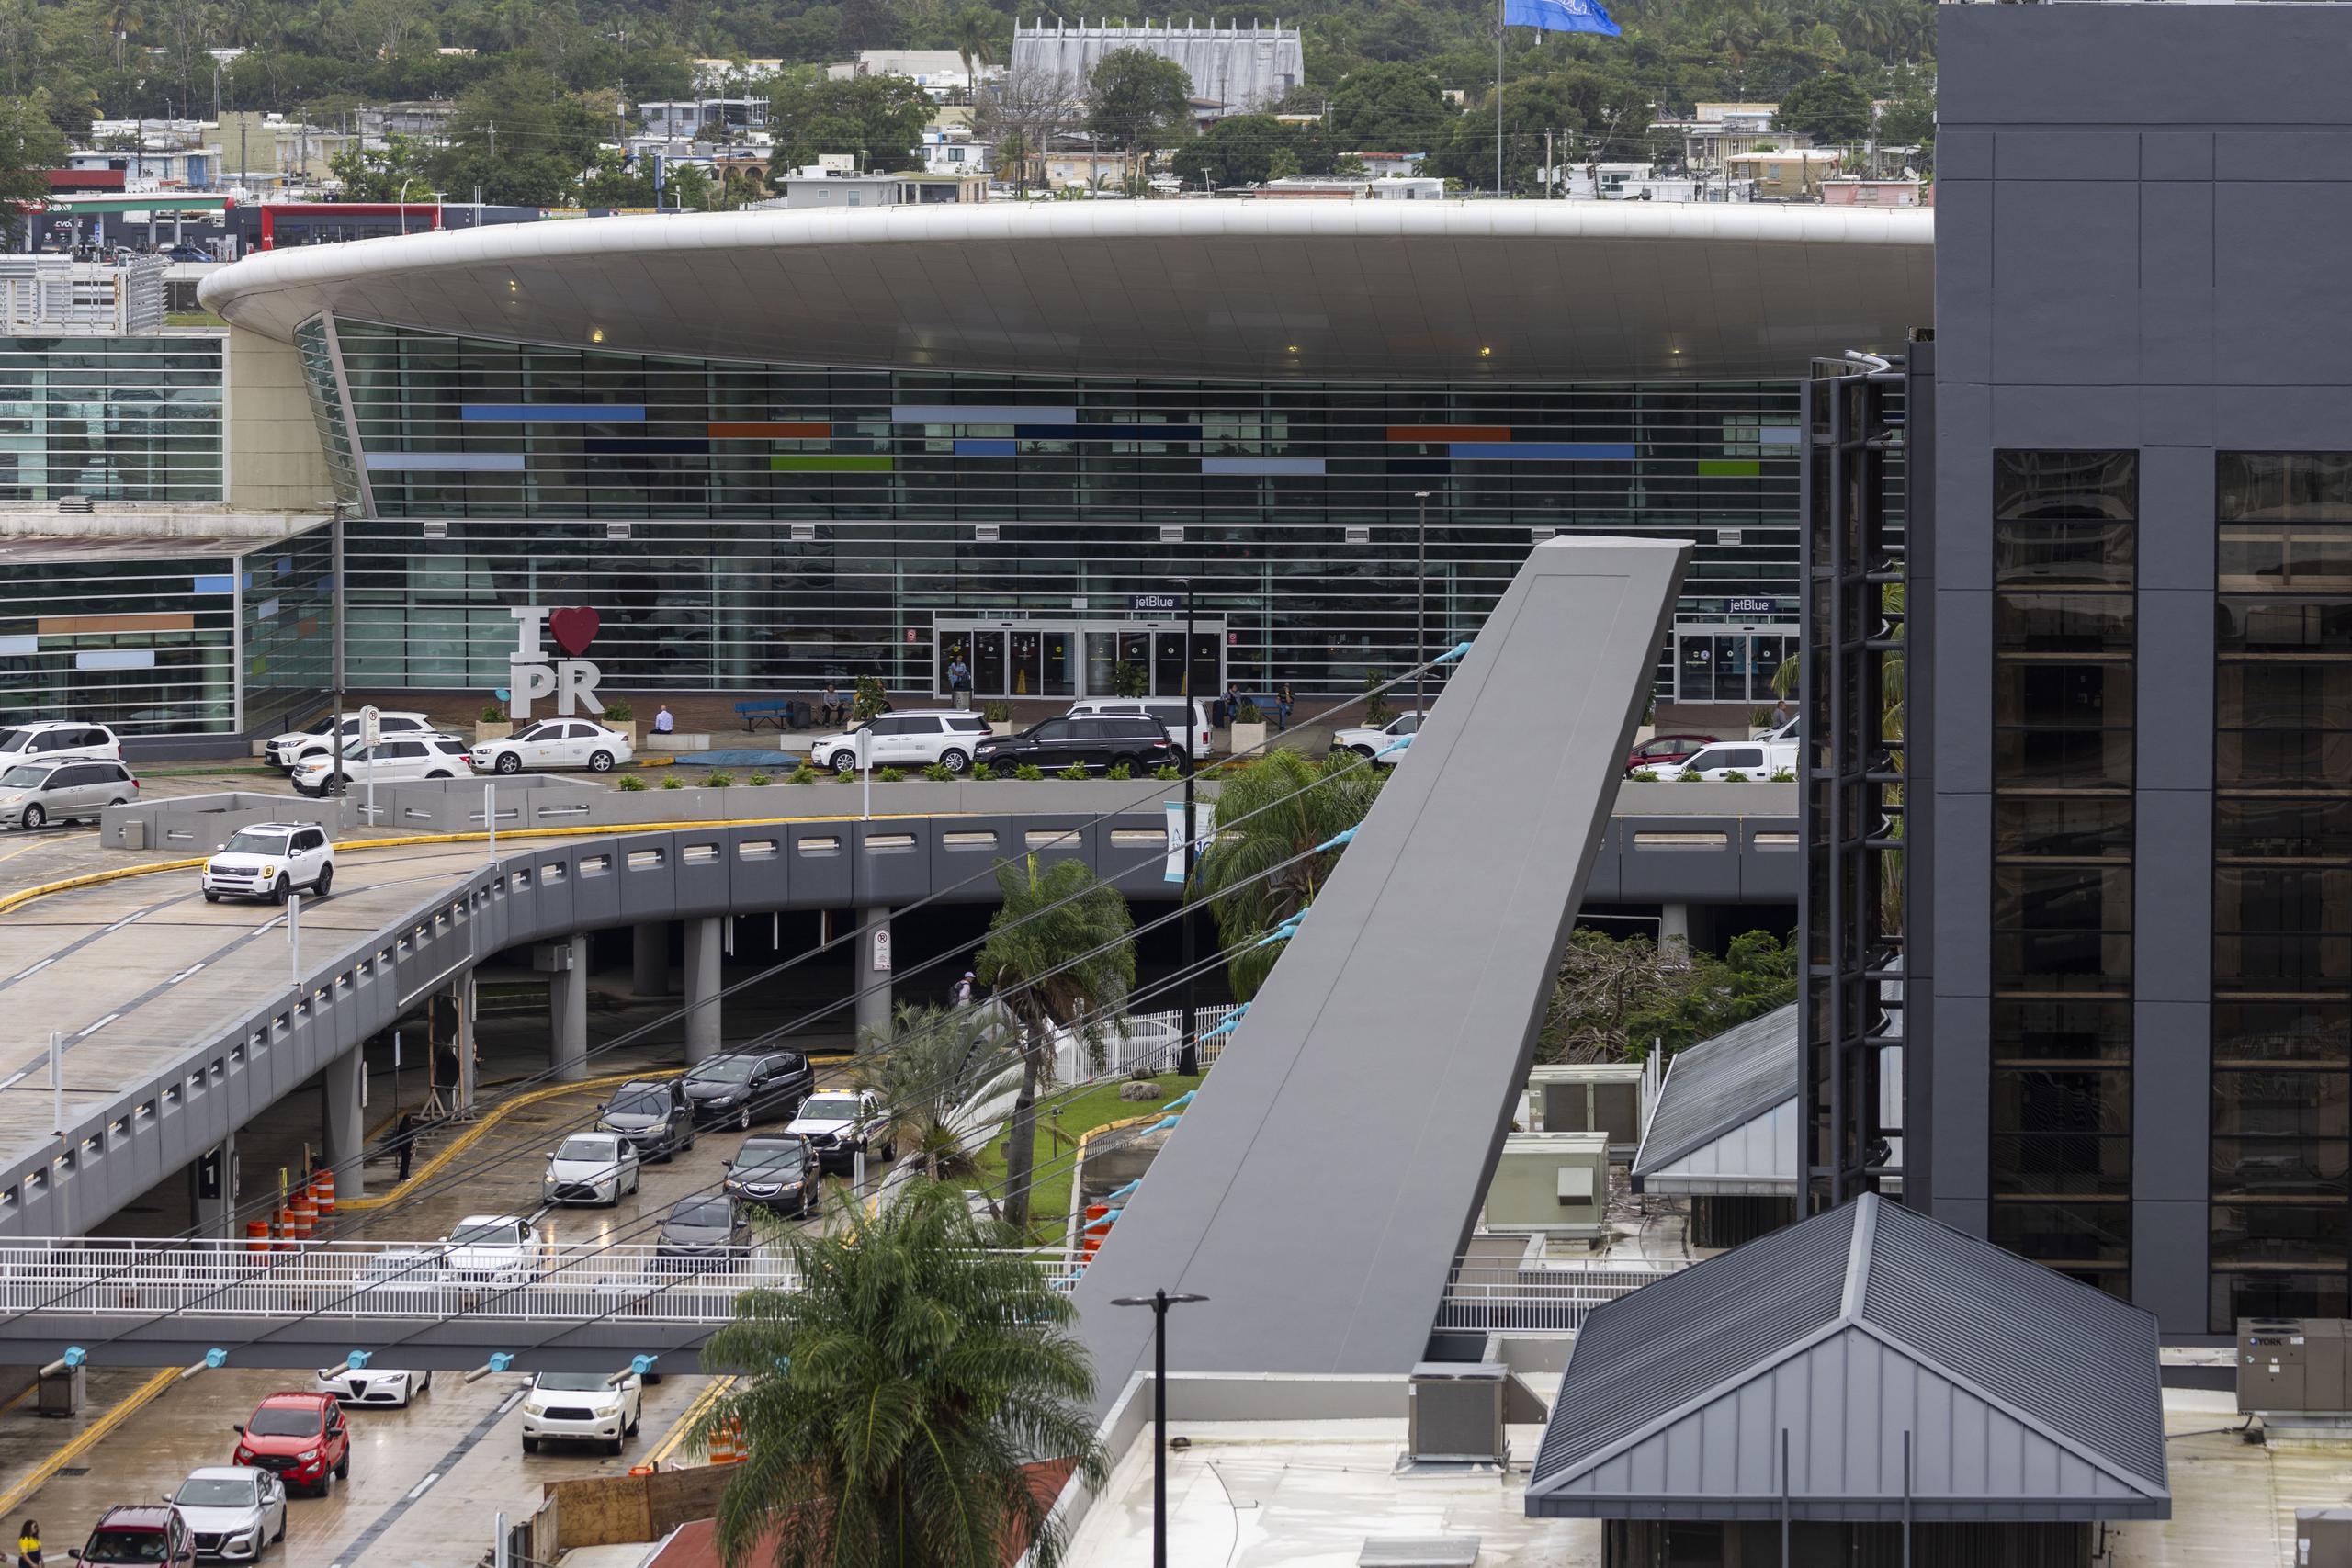 El operador del Aeropuerto Internacional Luis Muñoz Marín, recomendó a los viajeros con vuelos en el día de hoy, a que se mantengan en contacto con sus líneas aéreas ante posibles atrasos en sus vuelos.